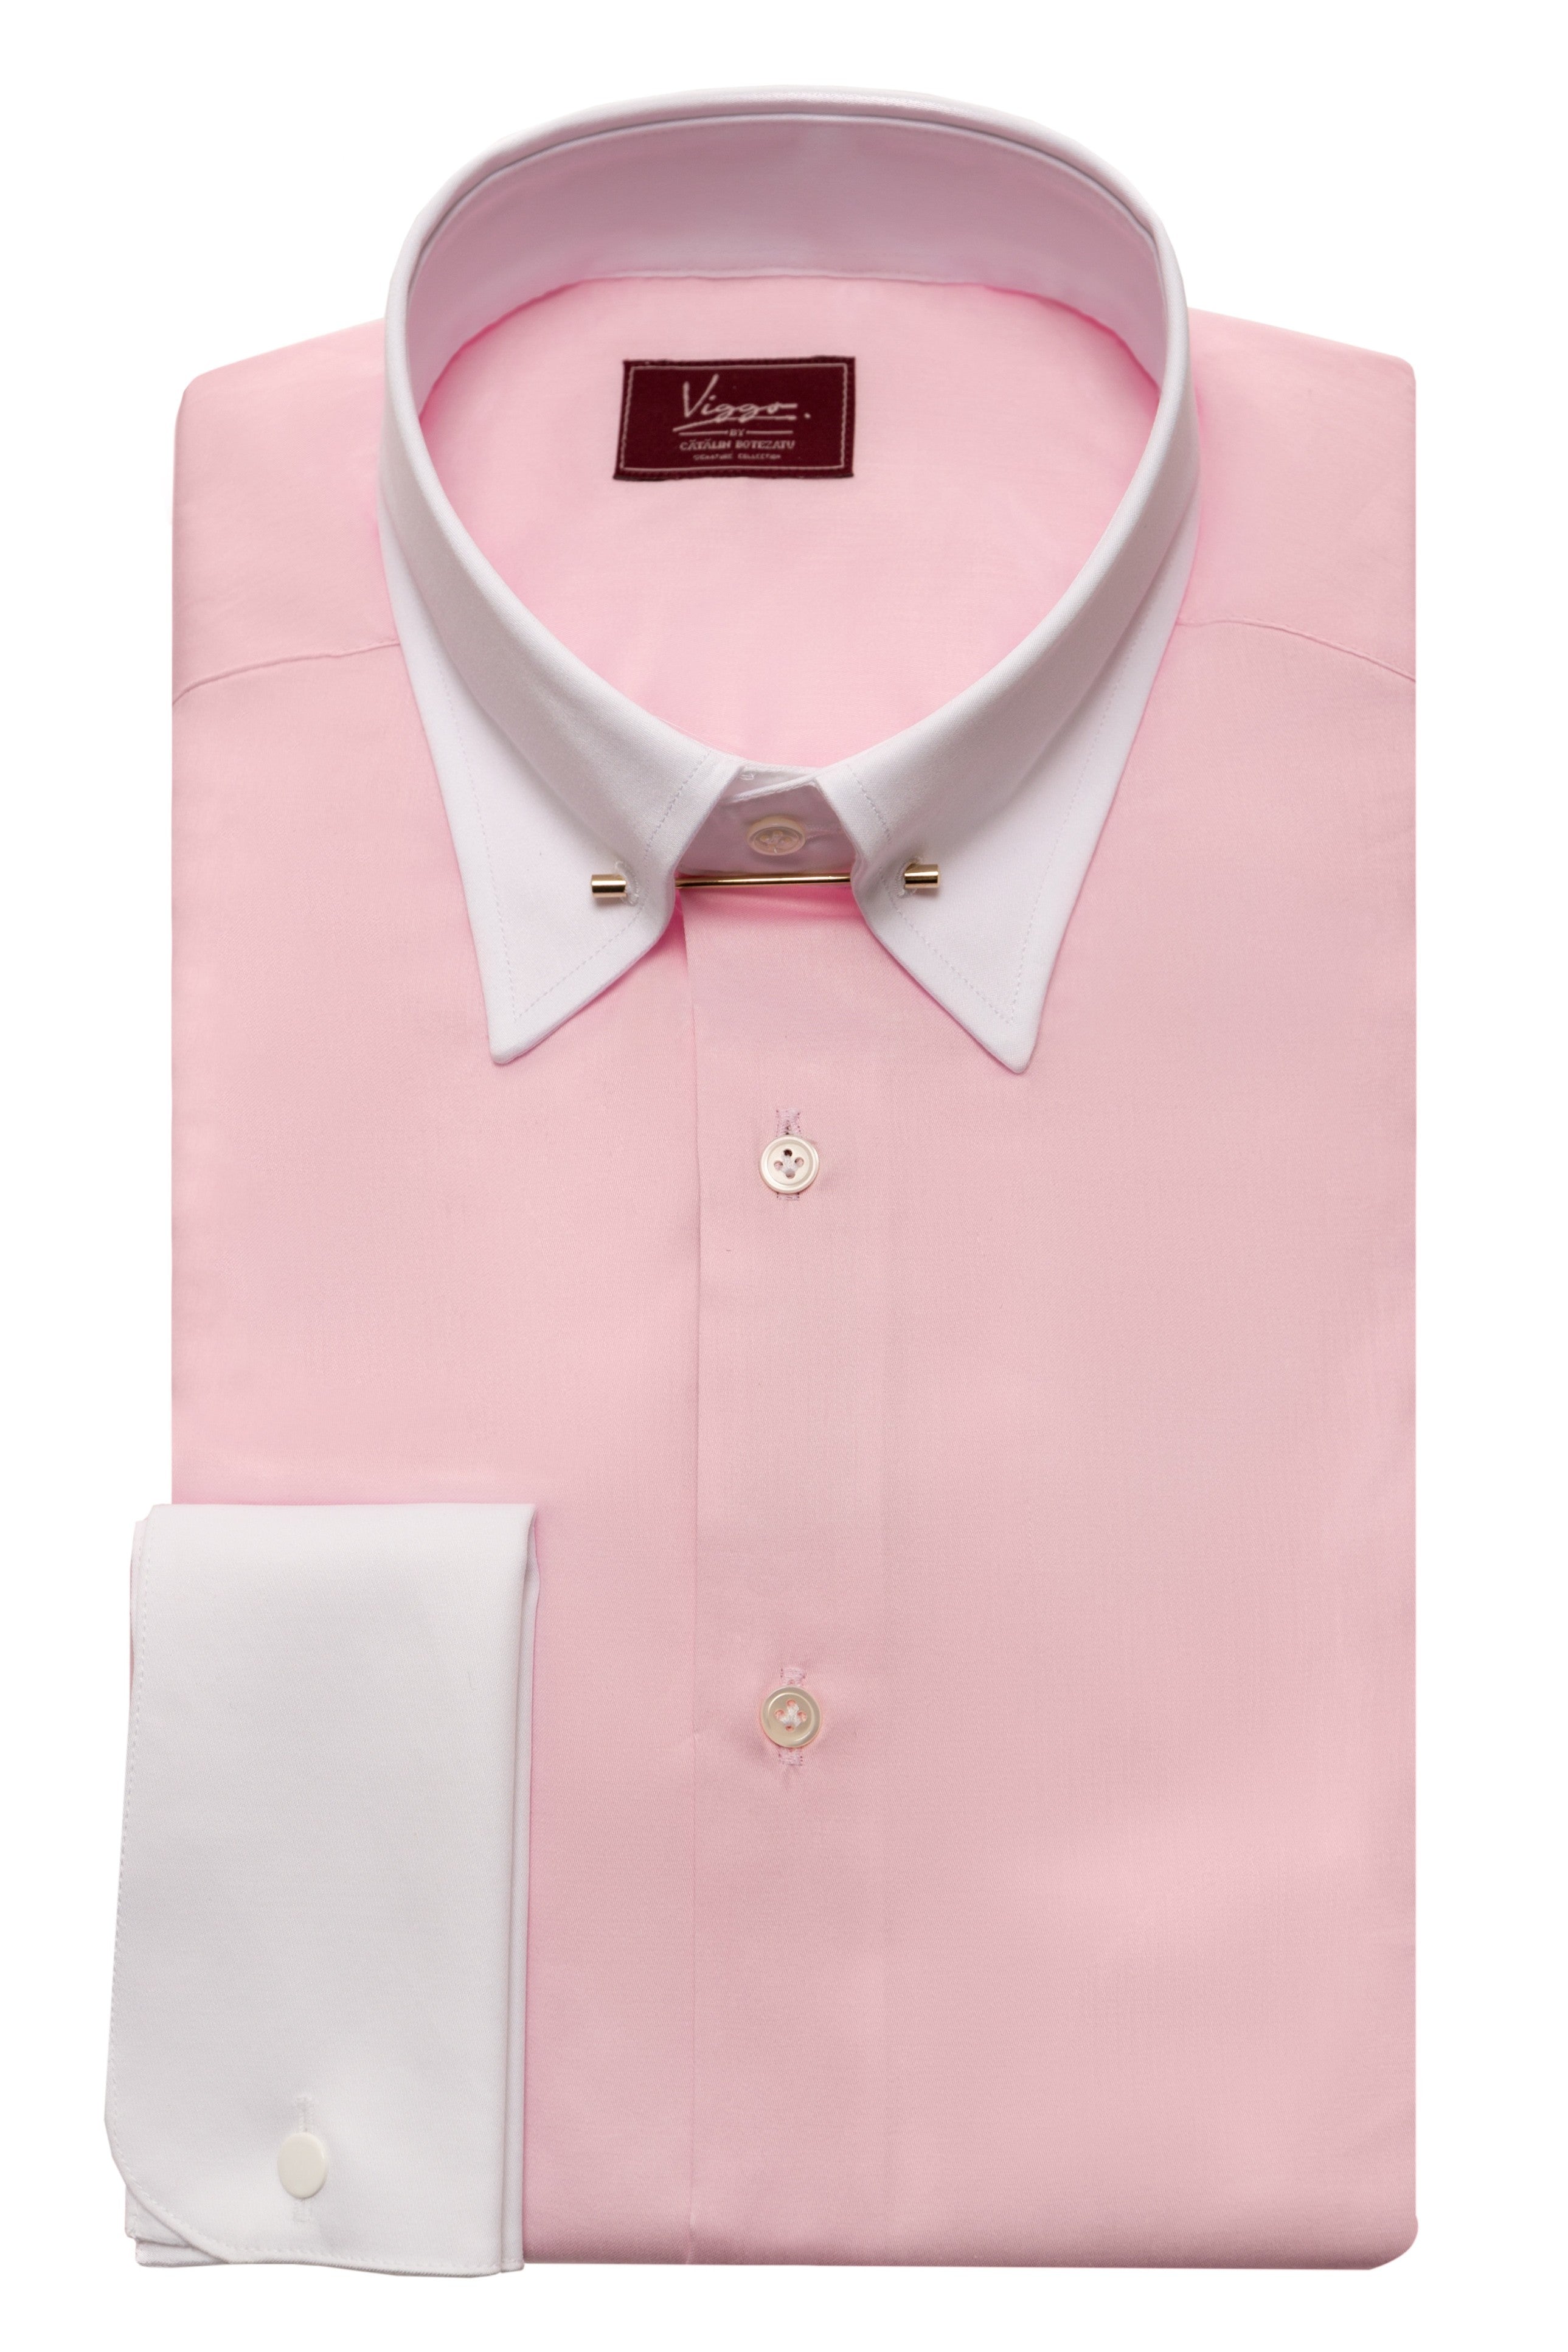 ピンクのシャツに白のピンカラー